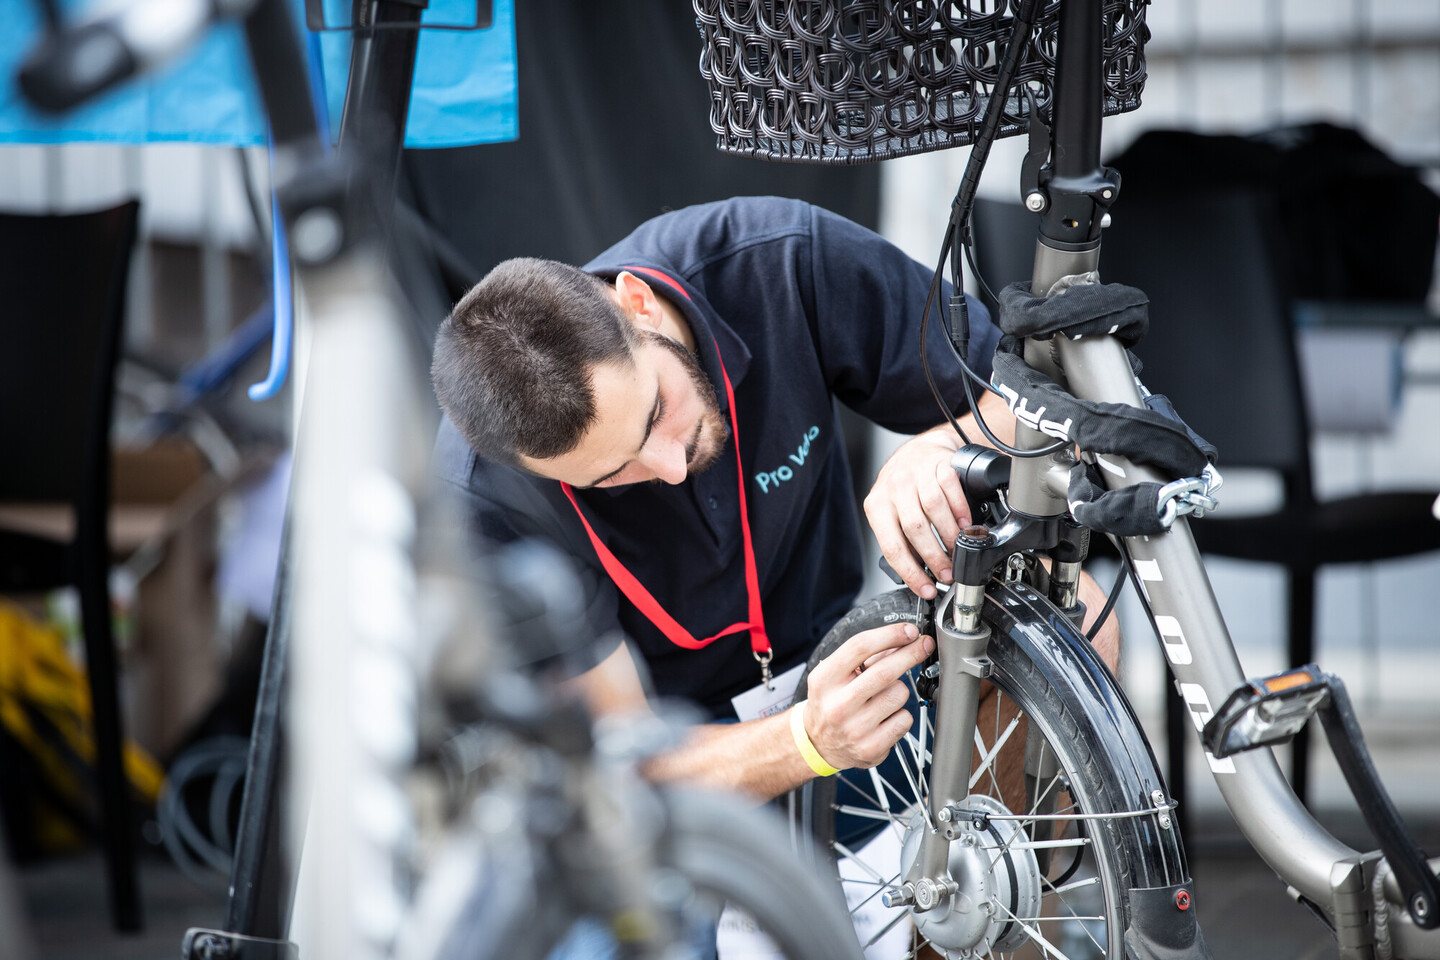 Entretien et réparation de vélo à Liège – Pro Velo